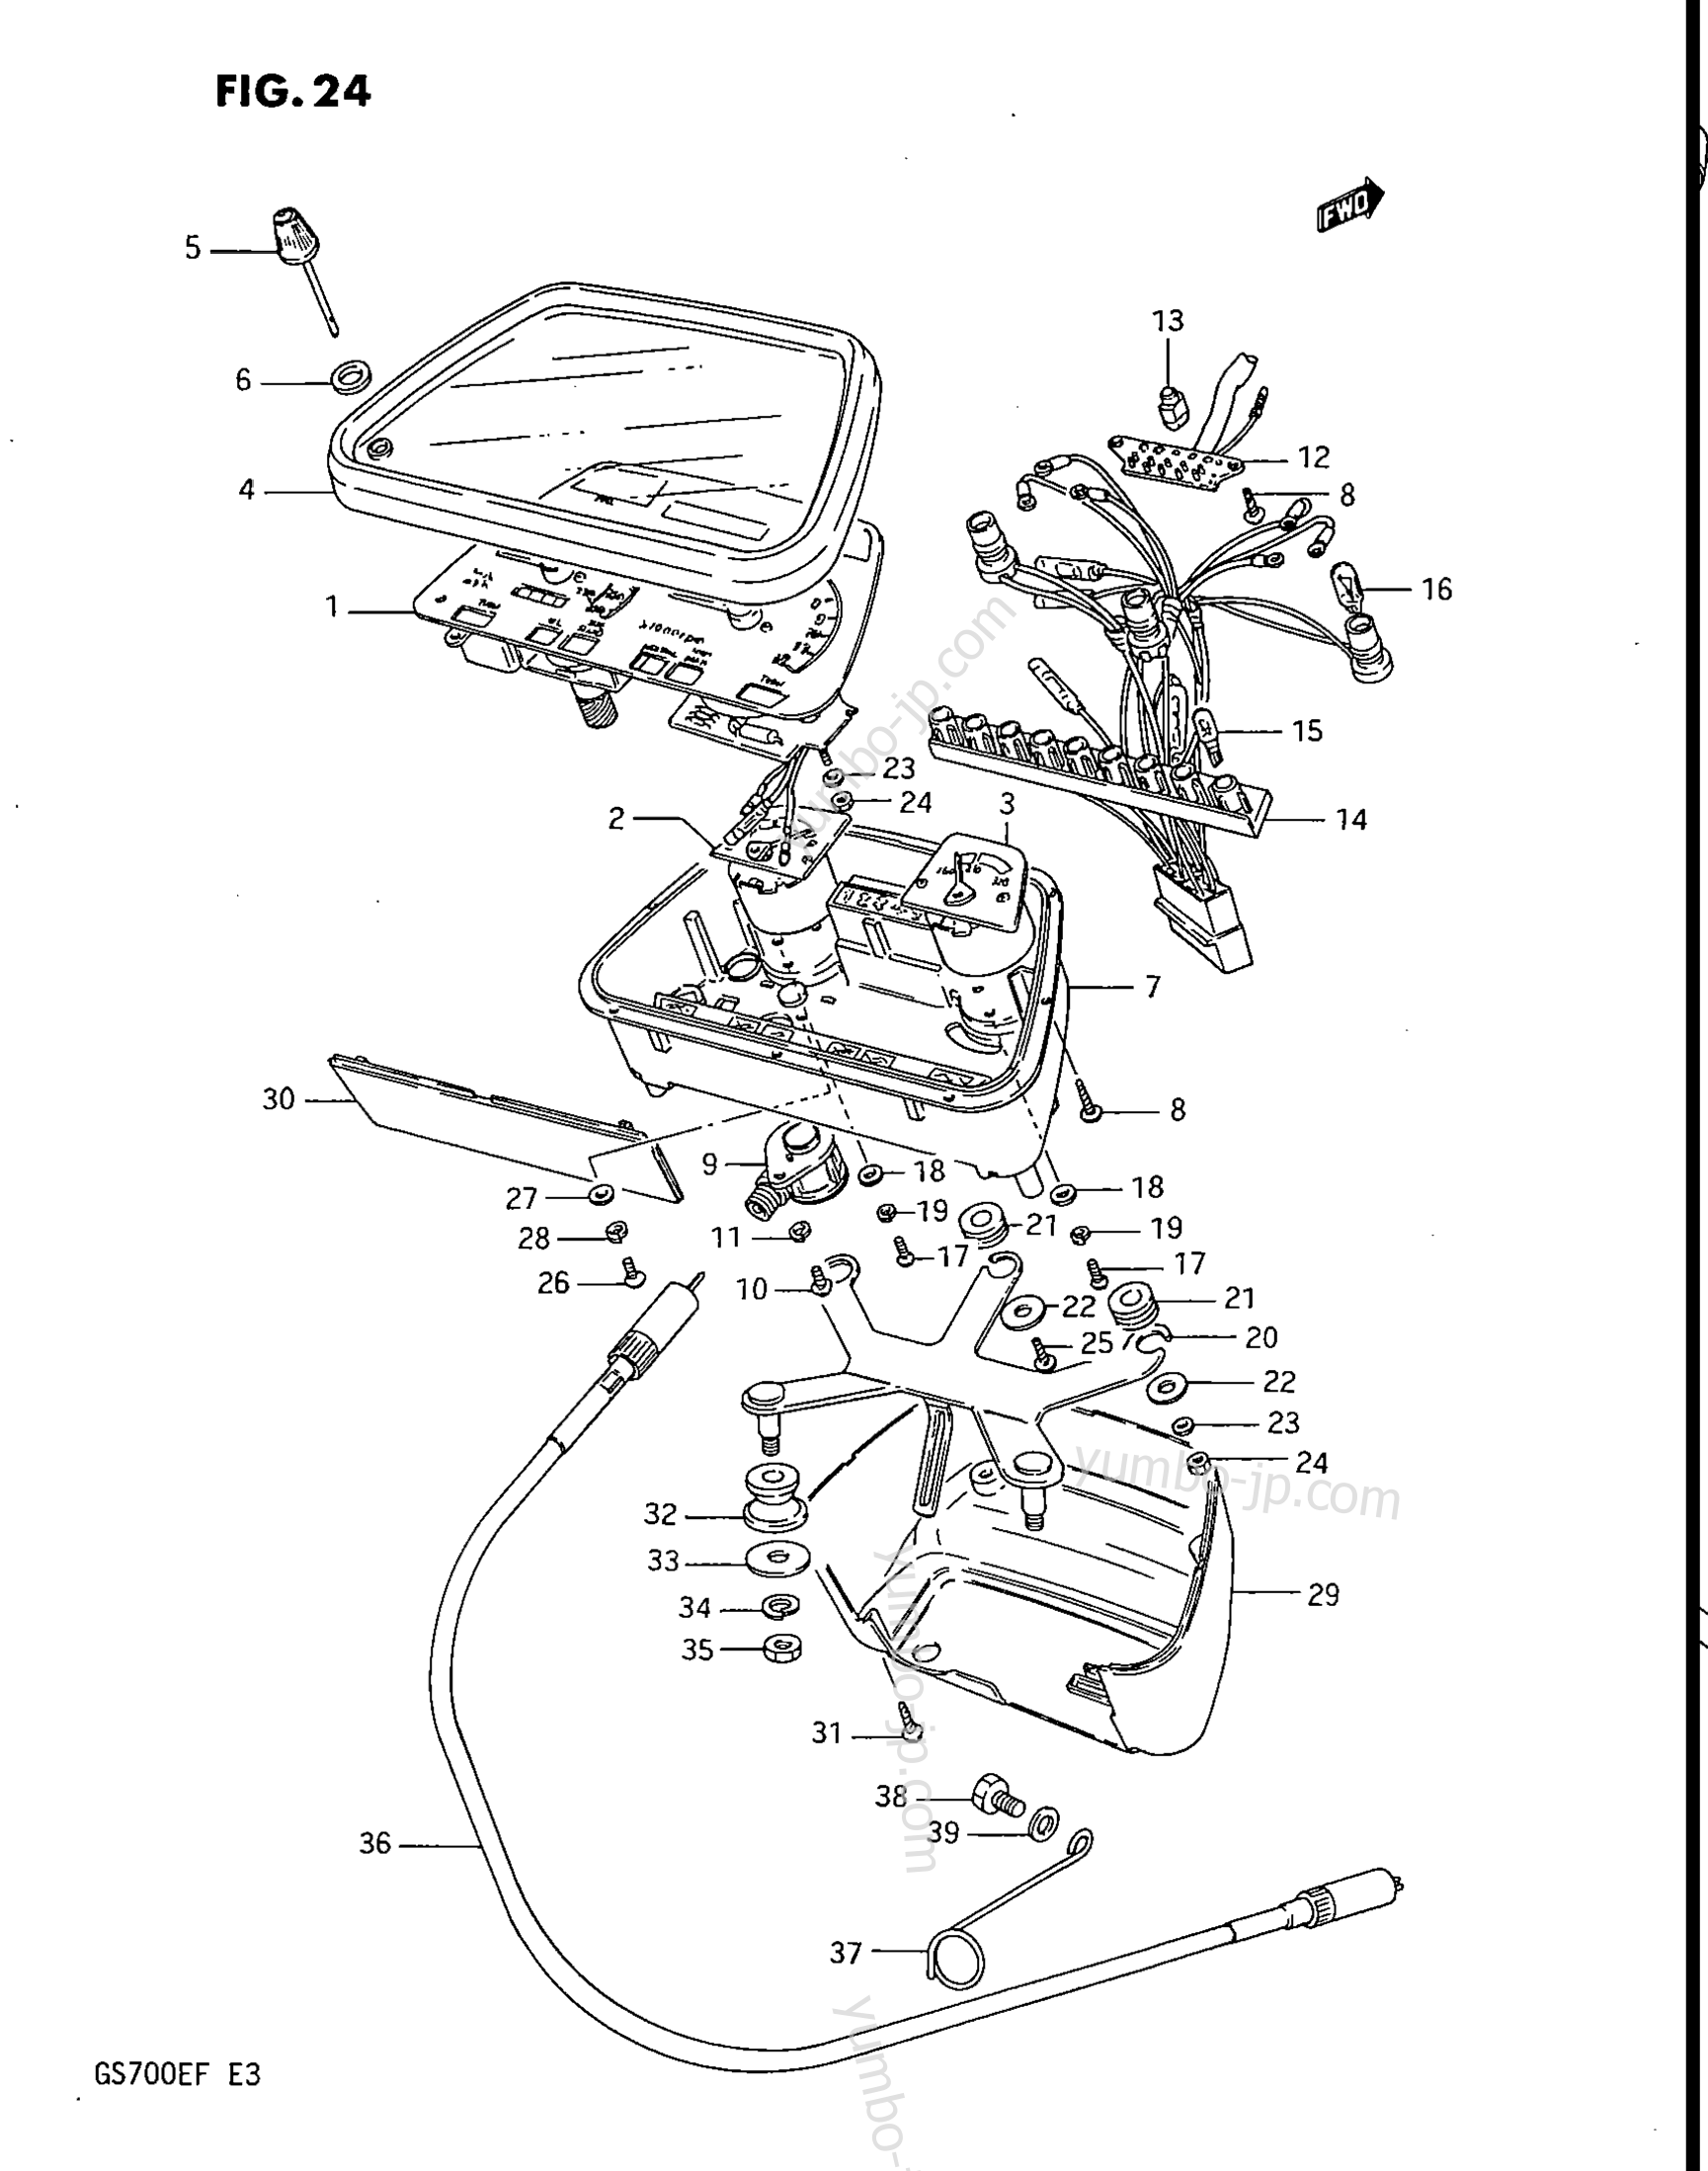 Speedometer - Tachometer for motorcycles SUZUKI ES, (GS700E) 1985 year